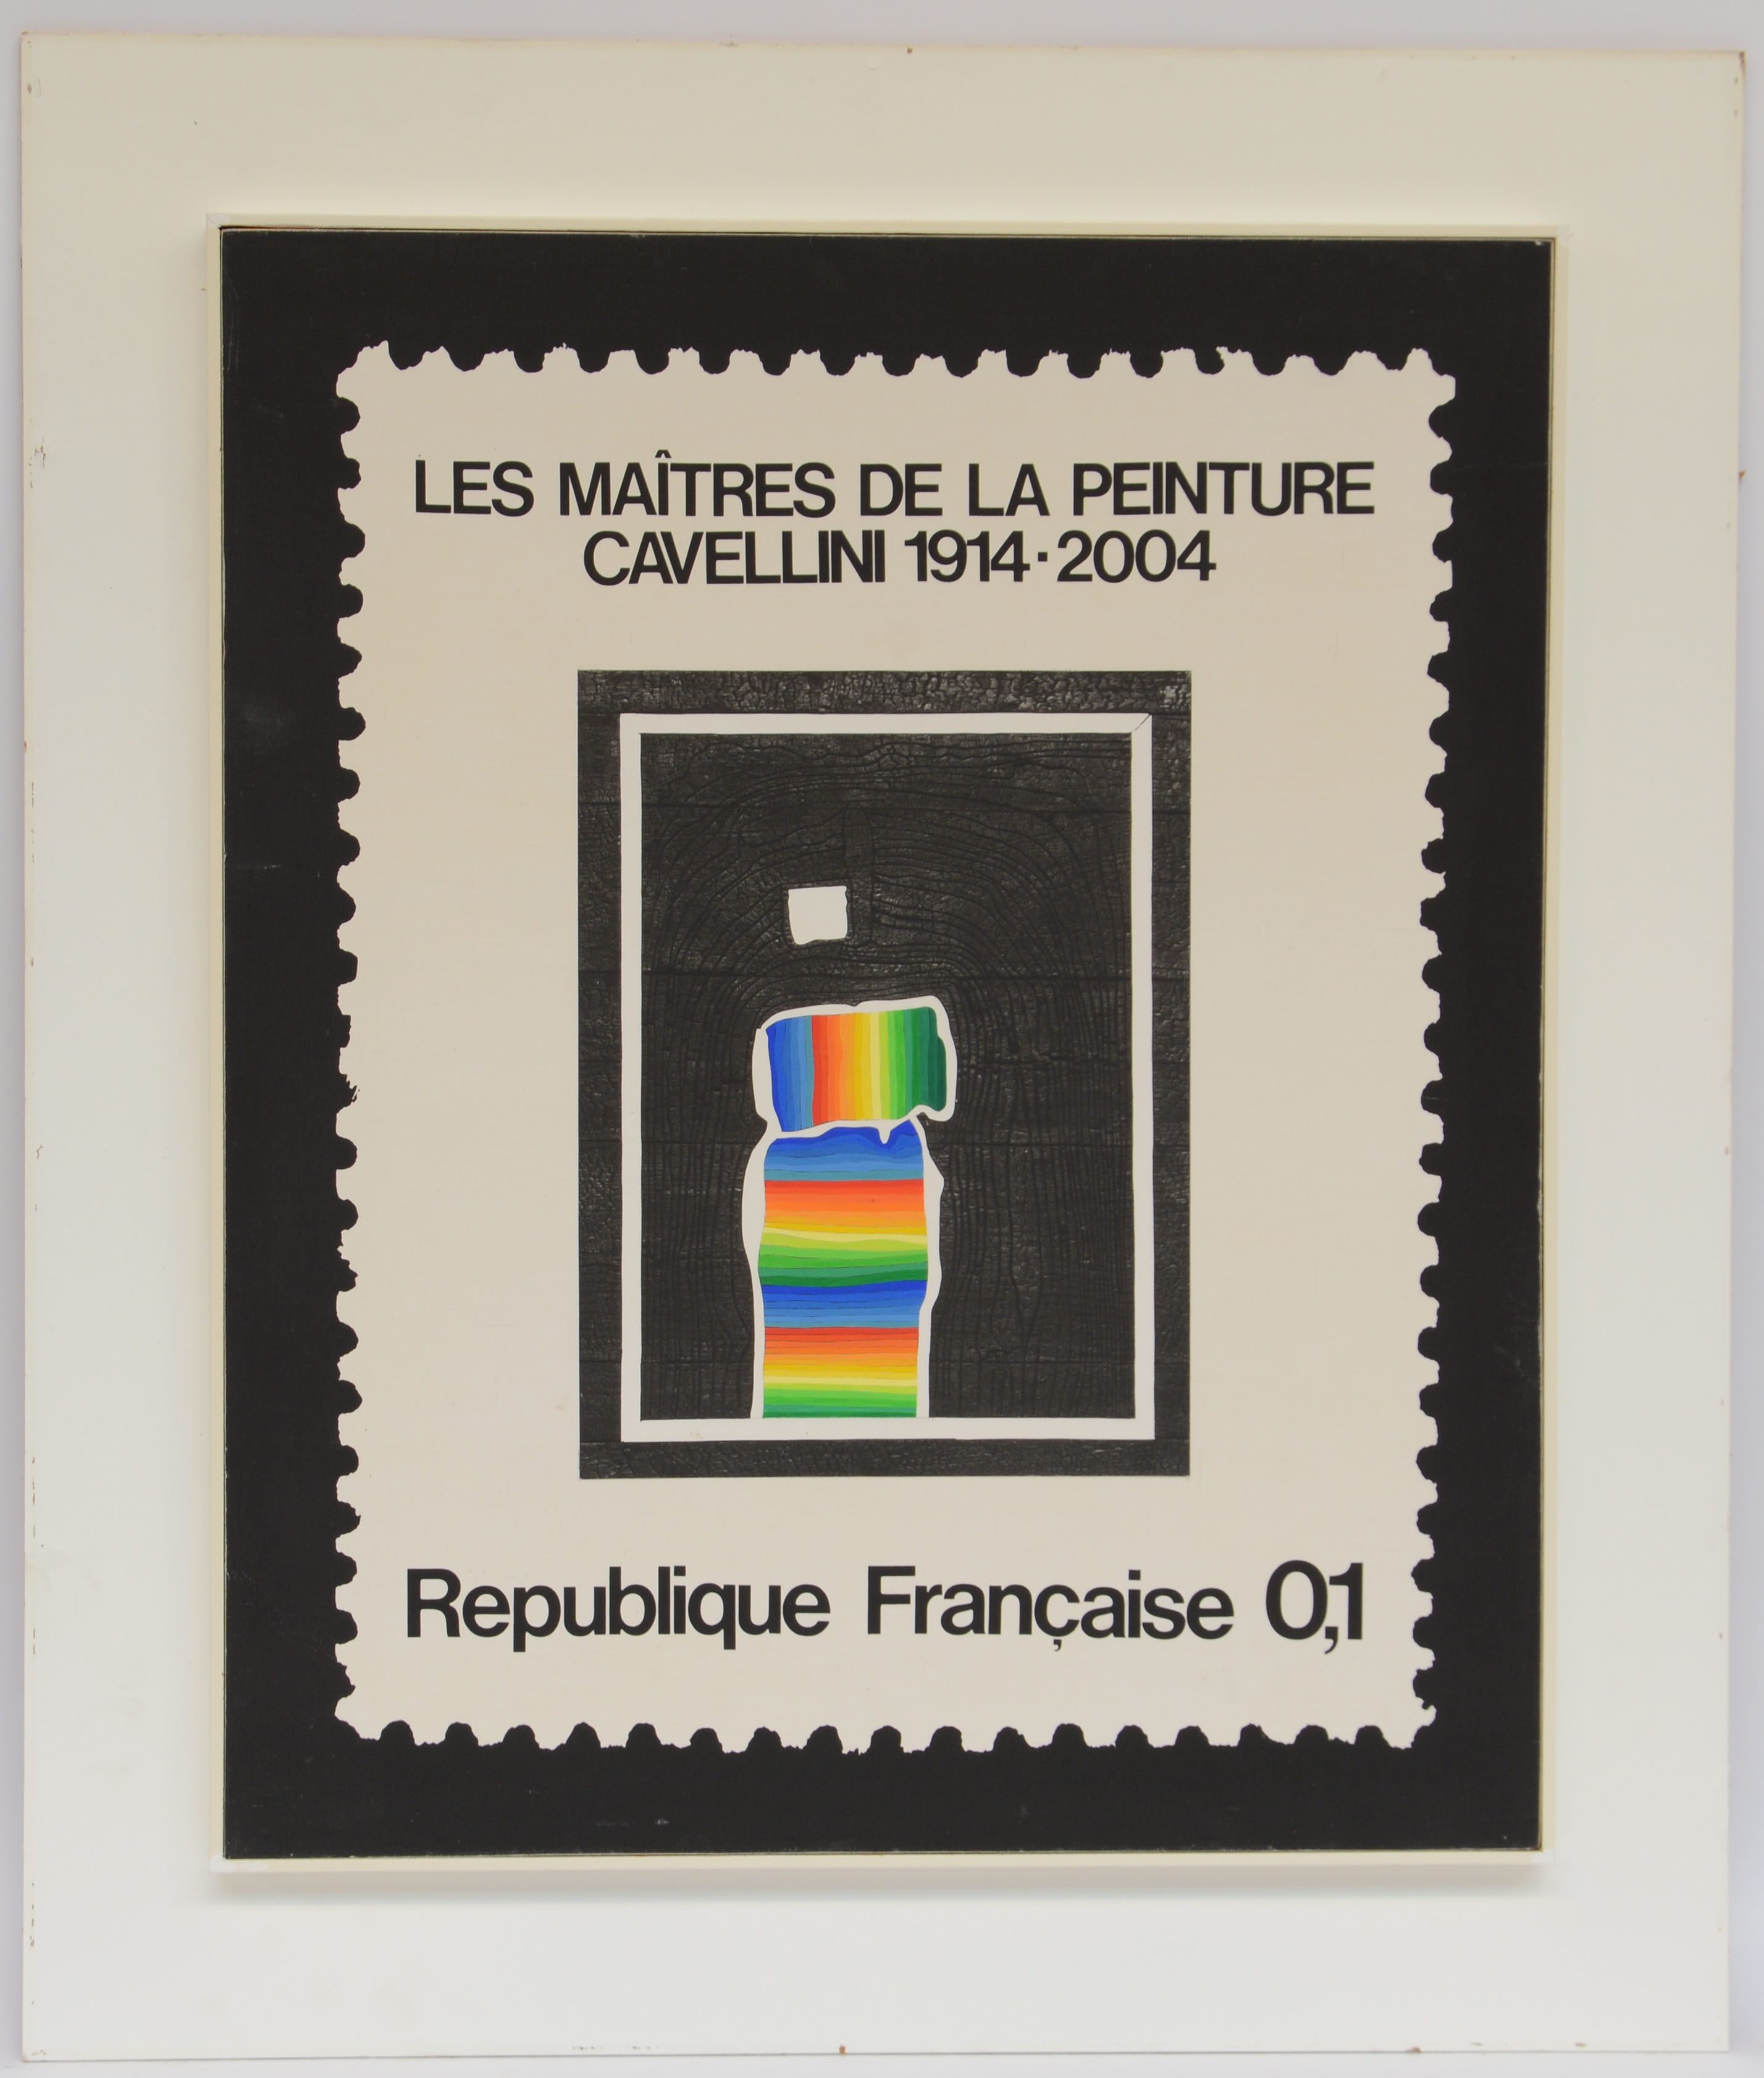 Les Maitres de la peinture by Gugliemo Achille Cavellini, 1972